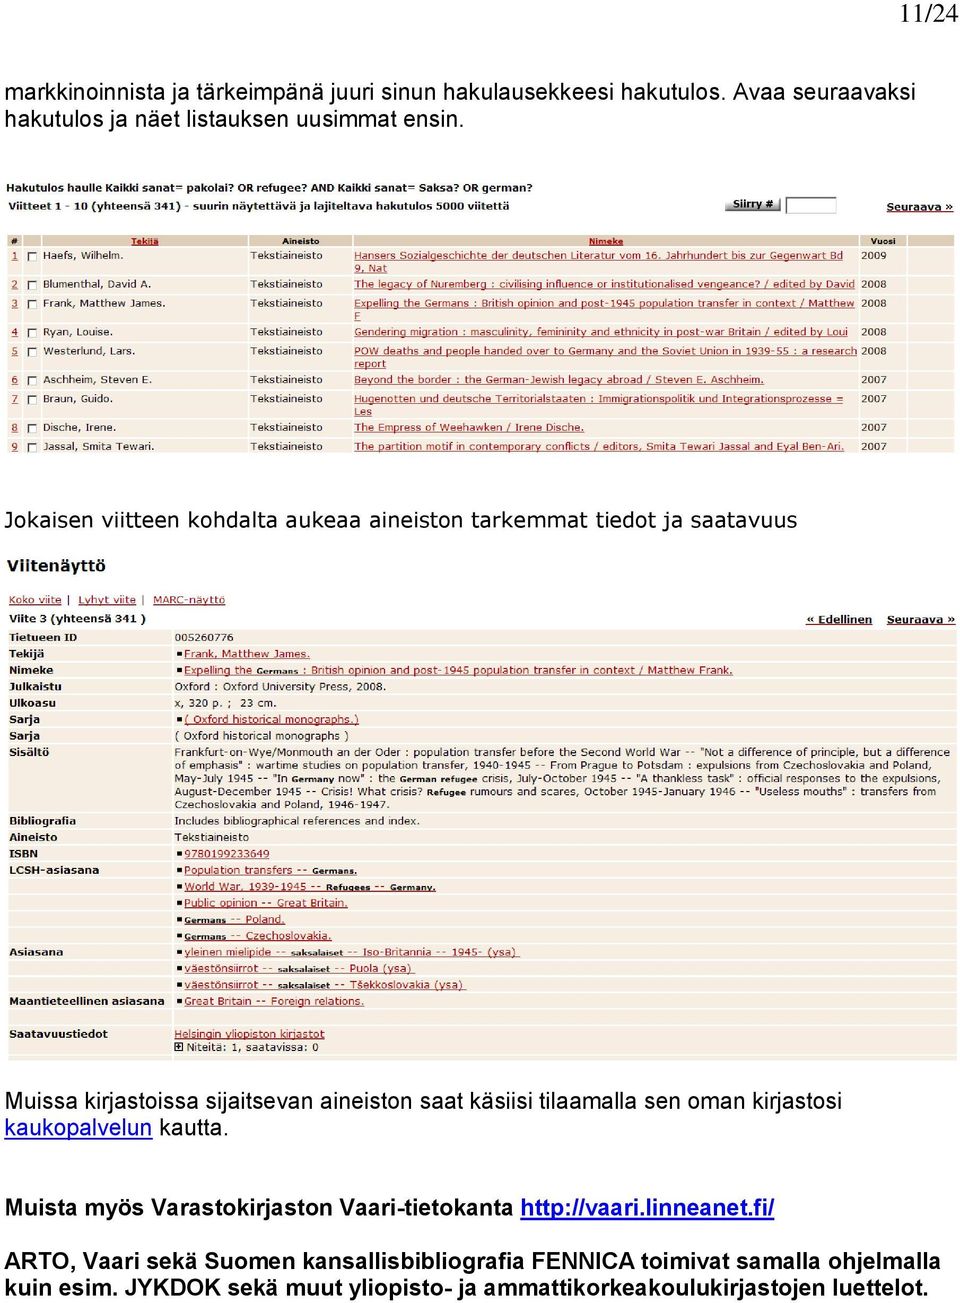 sen oman kirjastosi kaukopalvelun kautta. Muista myös Varastokirjaston Vaari-tietokanta http://vaari.linneanet.